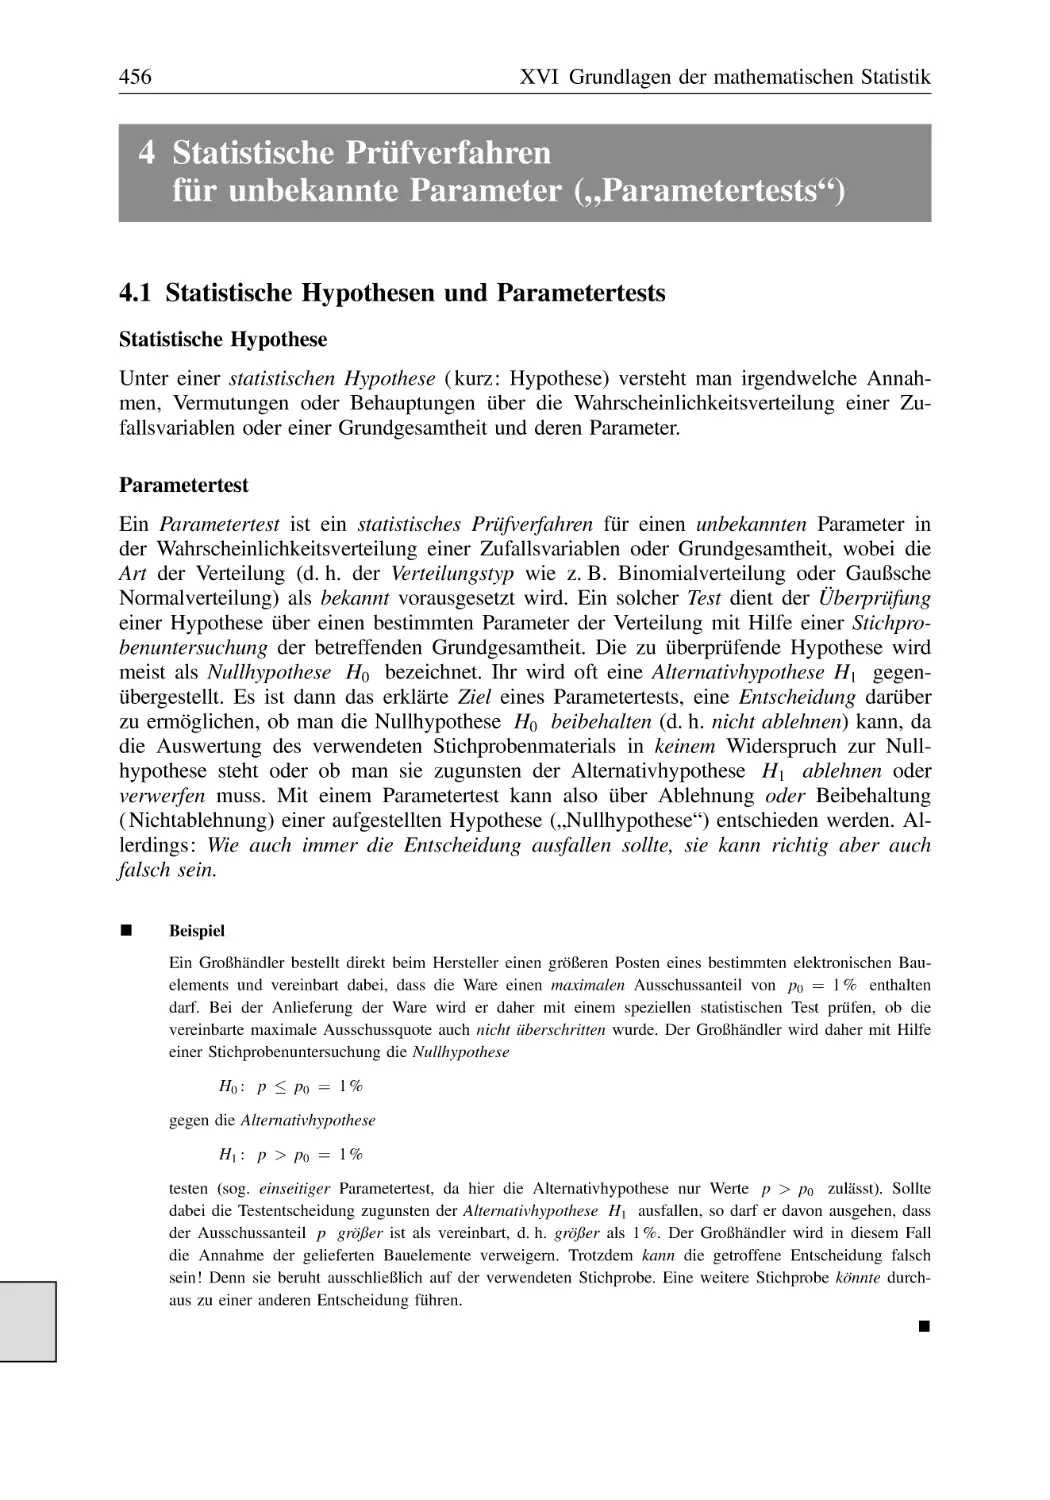 4 Statistische Prüfverfahren für unbekannte Parameter („Parametertests“)
4.1 Statistische Hypothesen und Parametertests